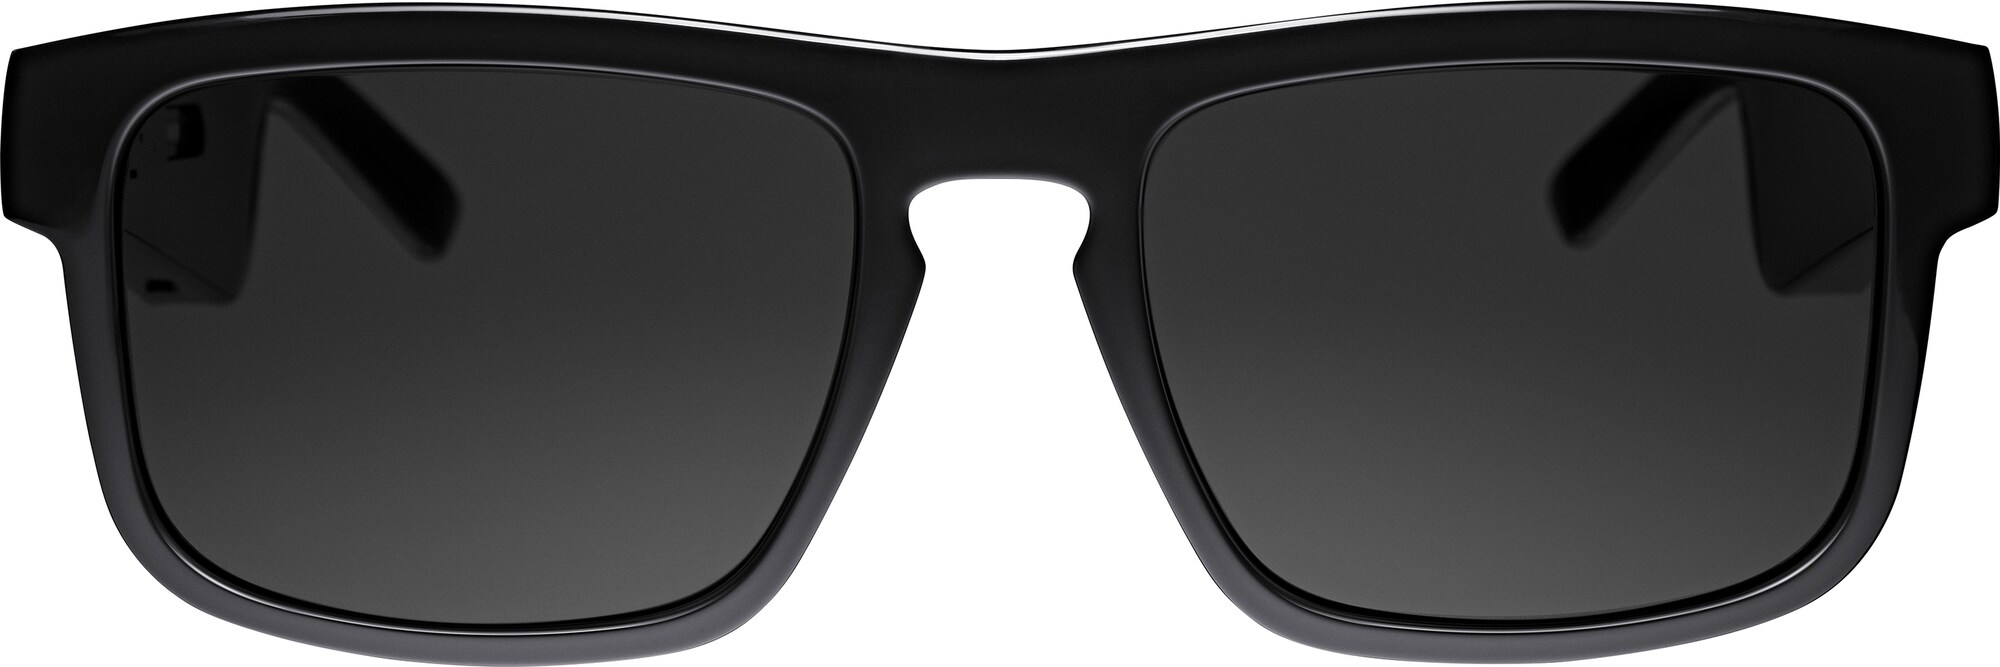 Bose Frames Tenor solbriller med lyd (sort) - Elkjøp